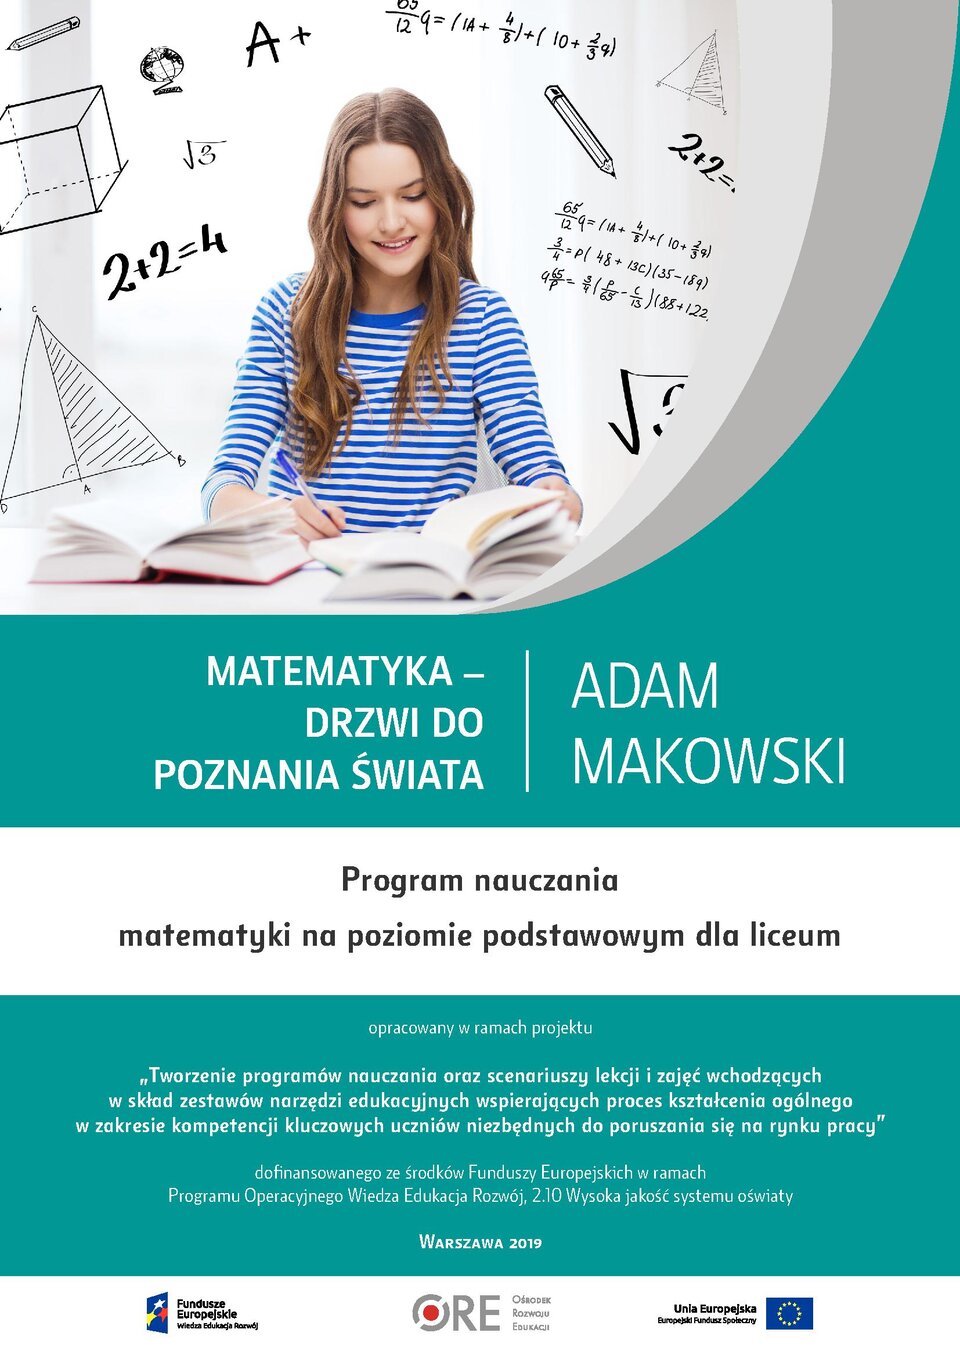 Pobierz plik: program-nauczania-matematyki-pn.-matematyka-dzrwi-do-poznania-swiata (2).pdf